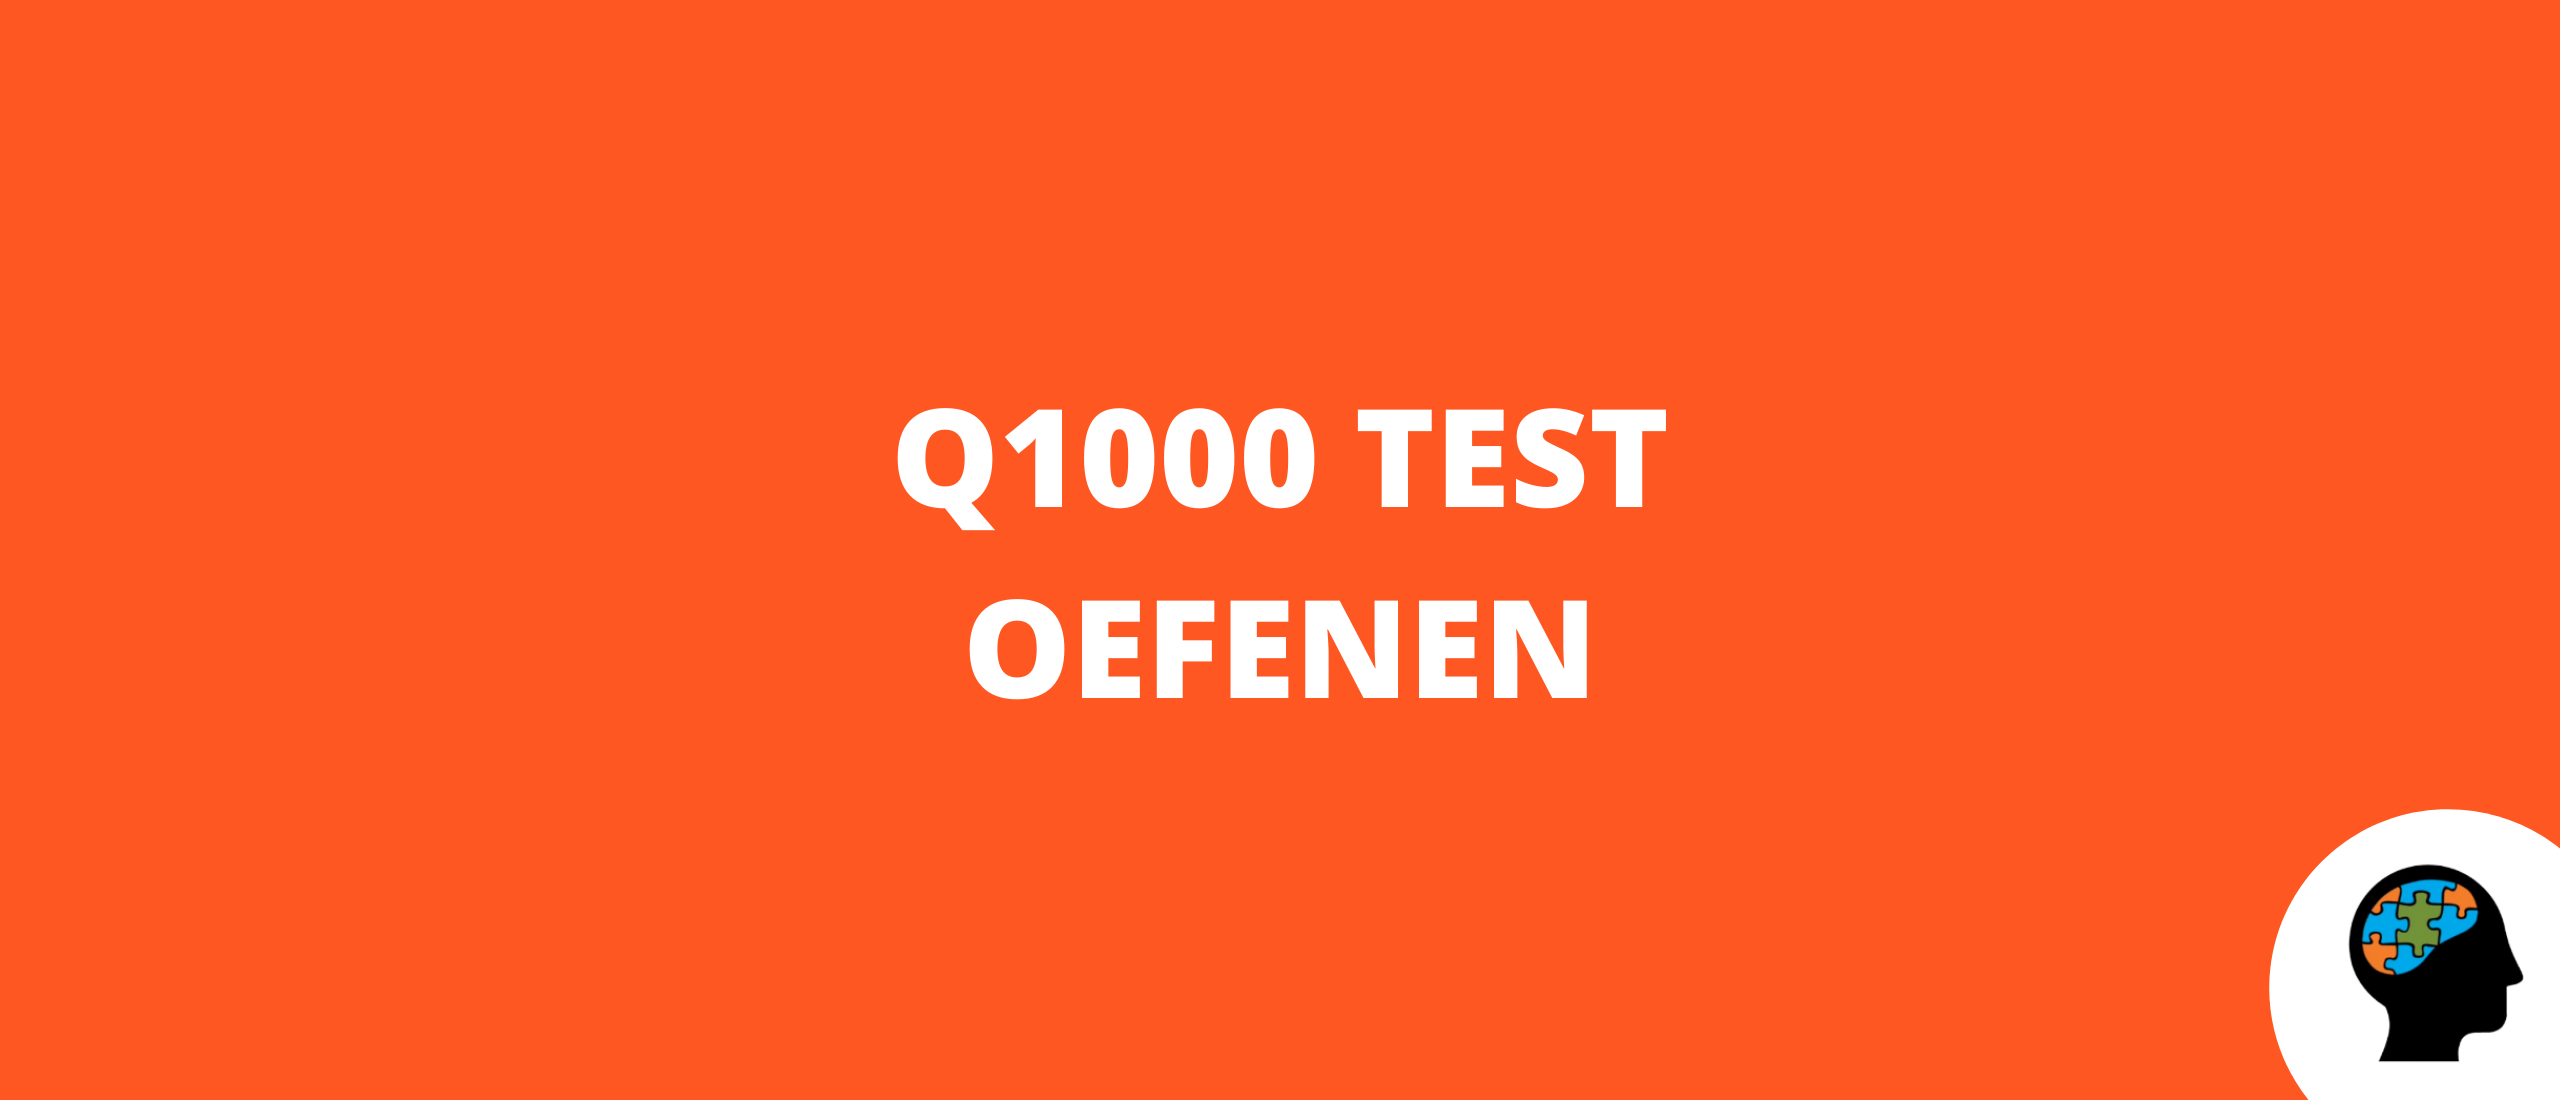 Q1000 test oefenen